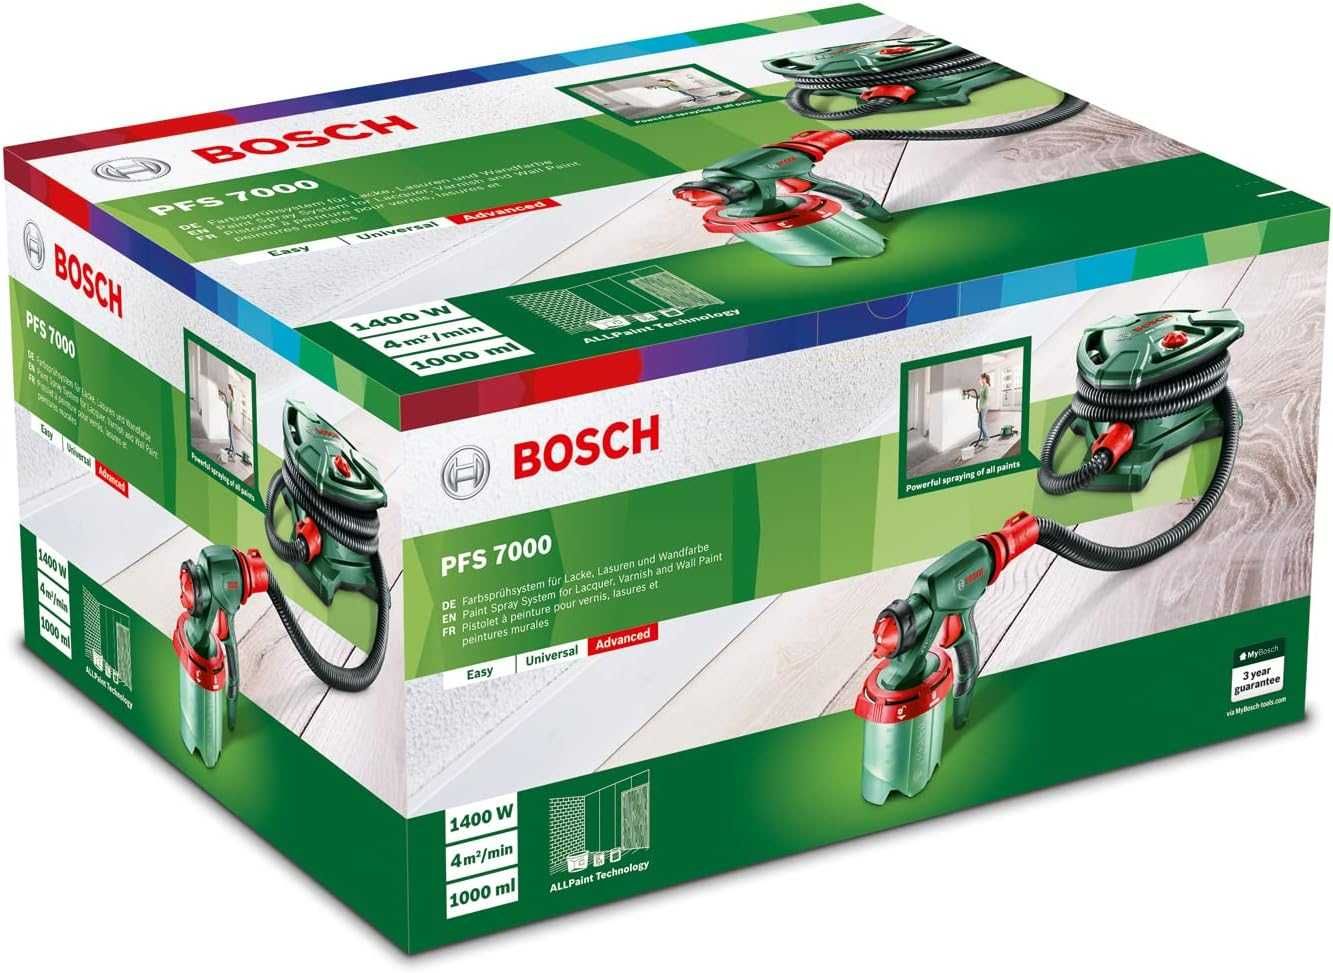 Sistem de pulverizare vopsea Bosch PFS 7000, 1400 W, 700 ml/min